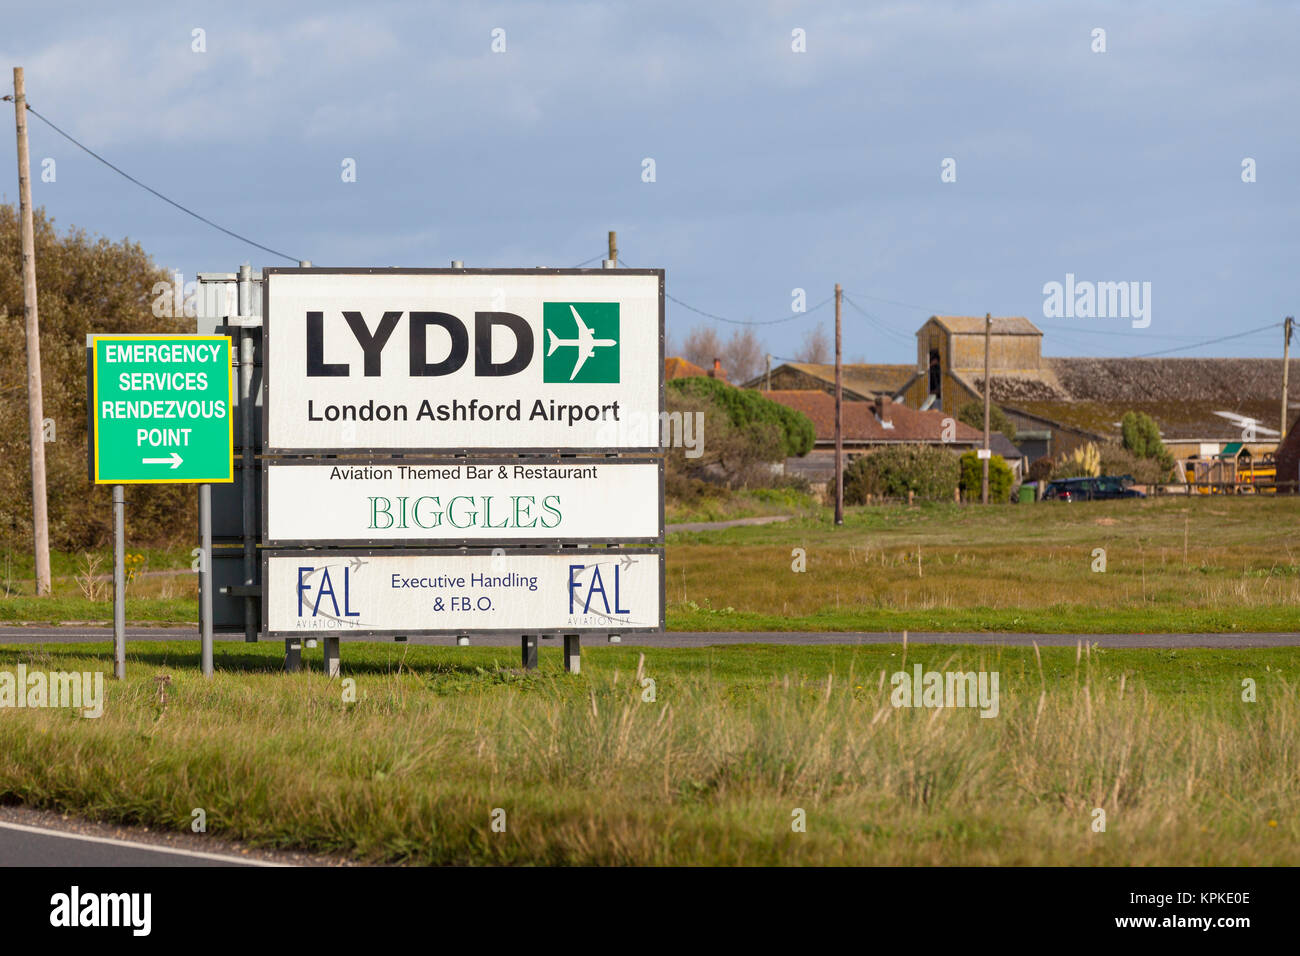 Lydd Londra aeroporto ashford segno, Regno Unito Foto Stock